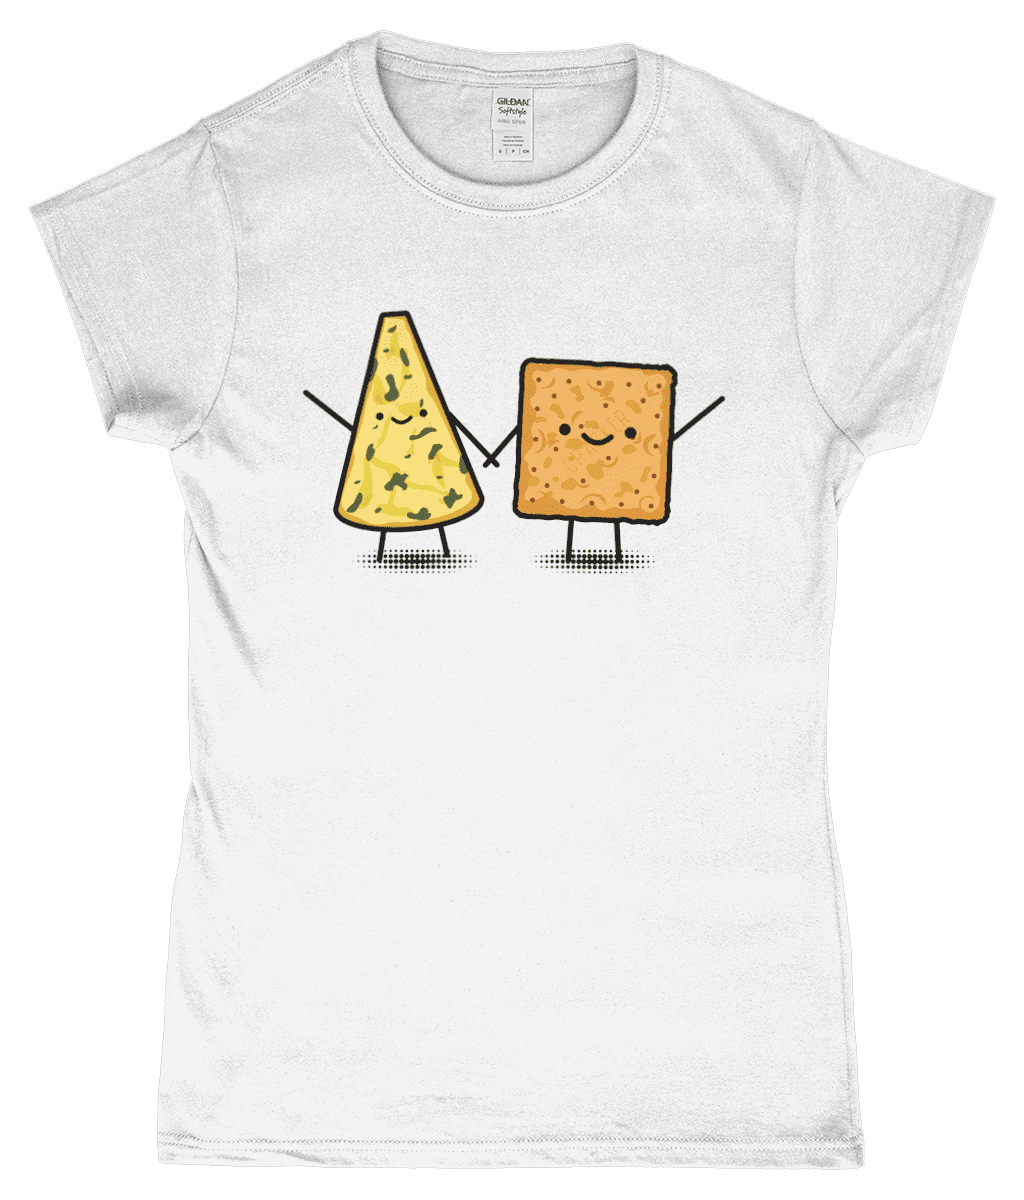 Cute Crackers and Cheese British Food Women's T-Shirt White